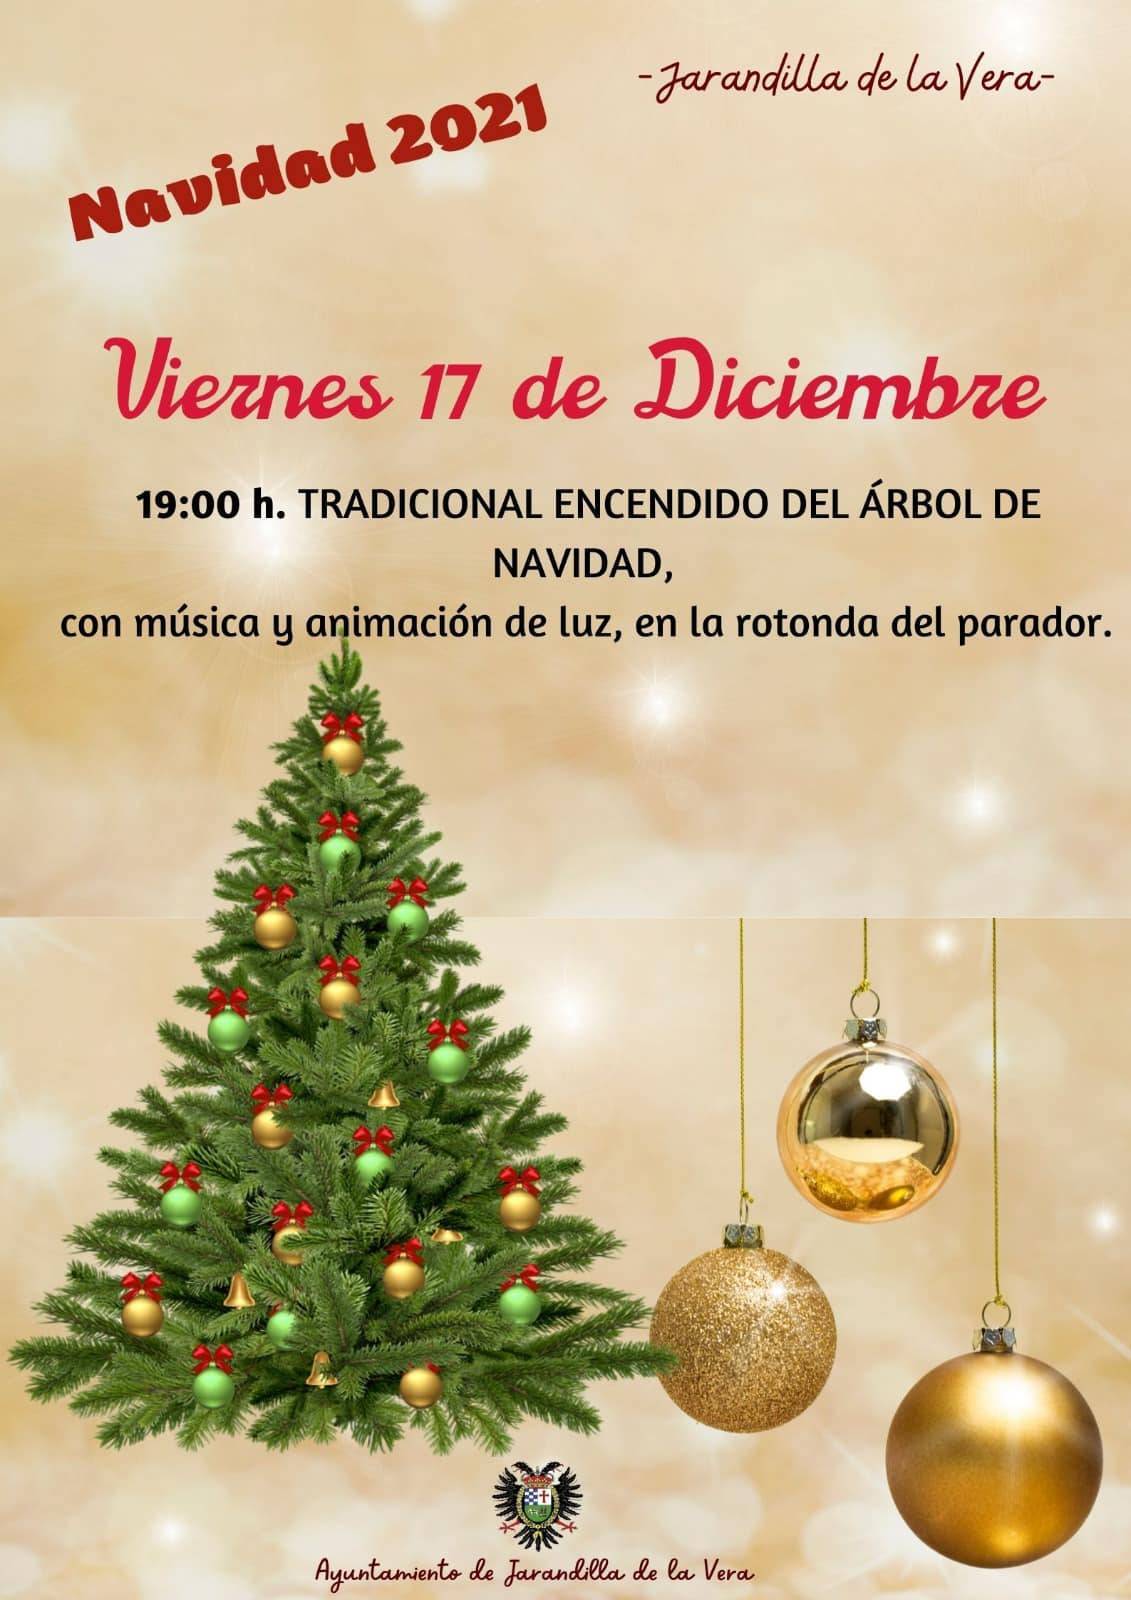 Encendido del árbol de Navidad (2021) - Jarandilla de la Vera (Cáceres)